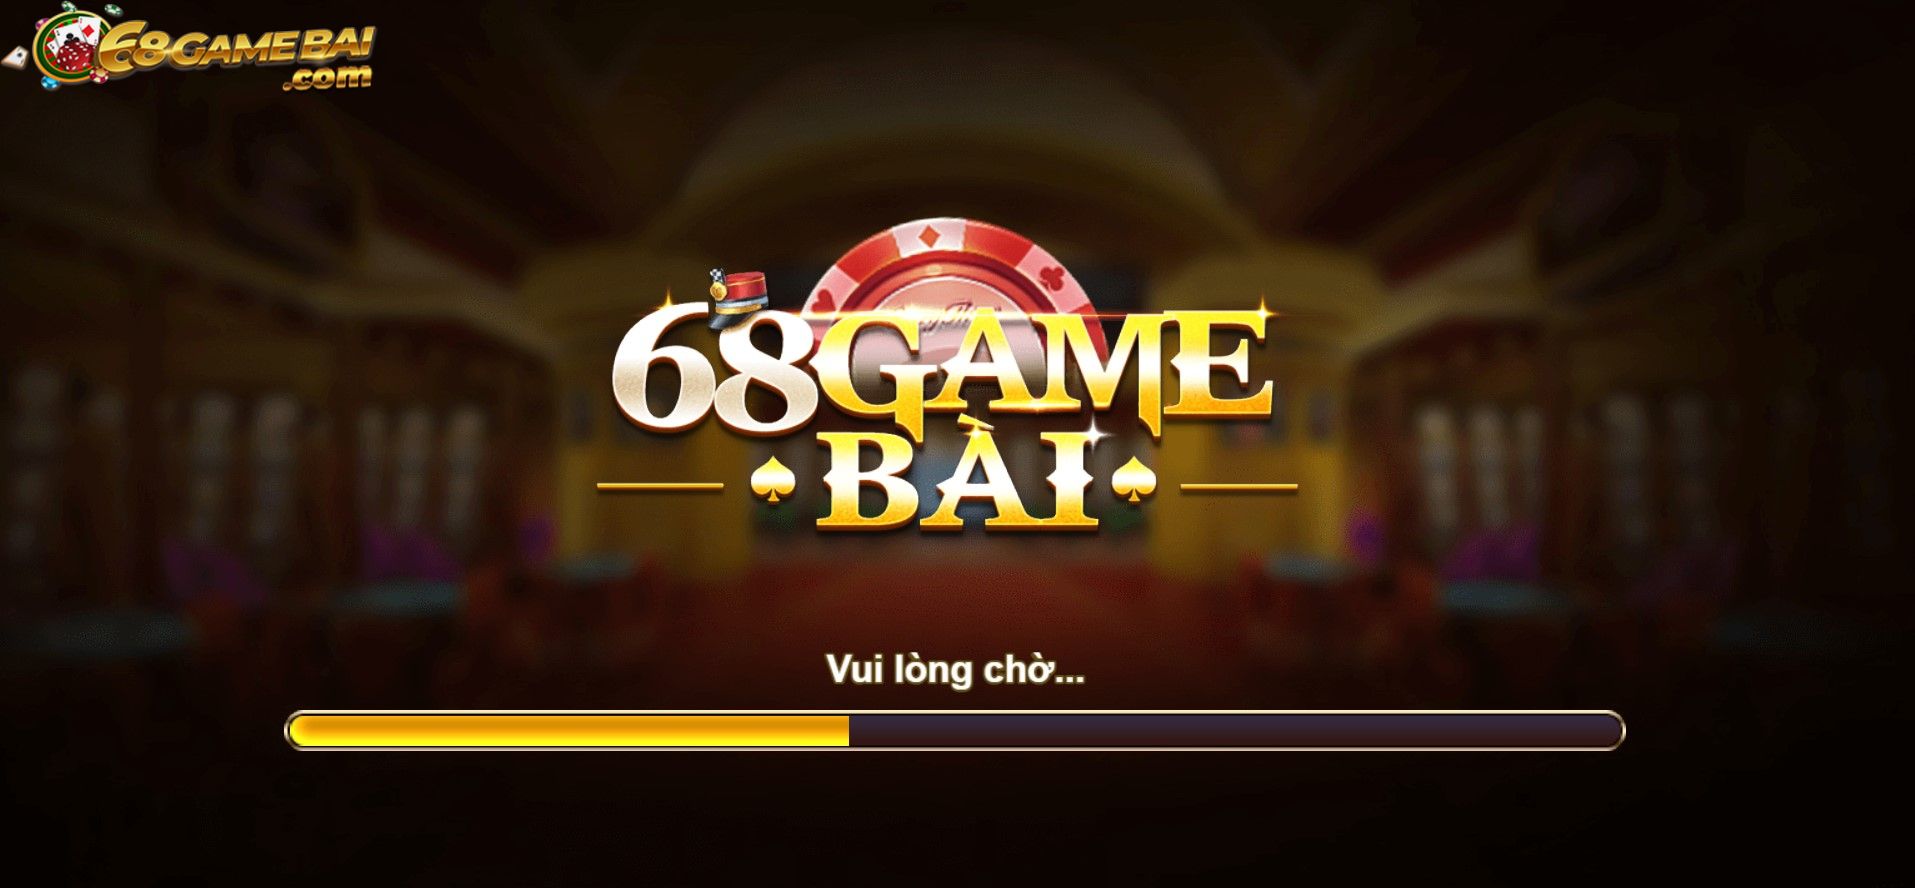 Truy cập vào cổng game 68gamebai để có những trải nghiệm game tuyệt vời